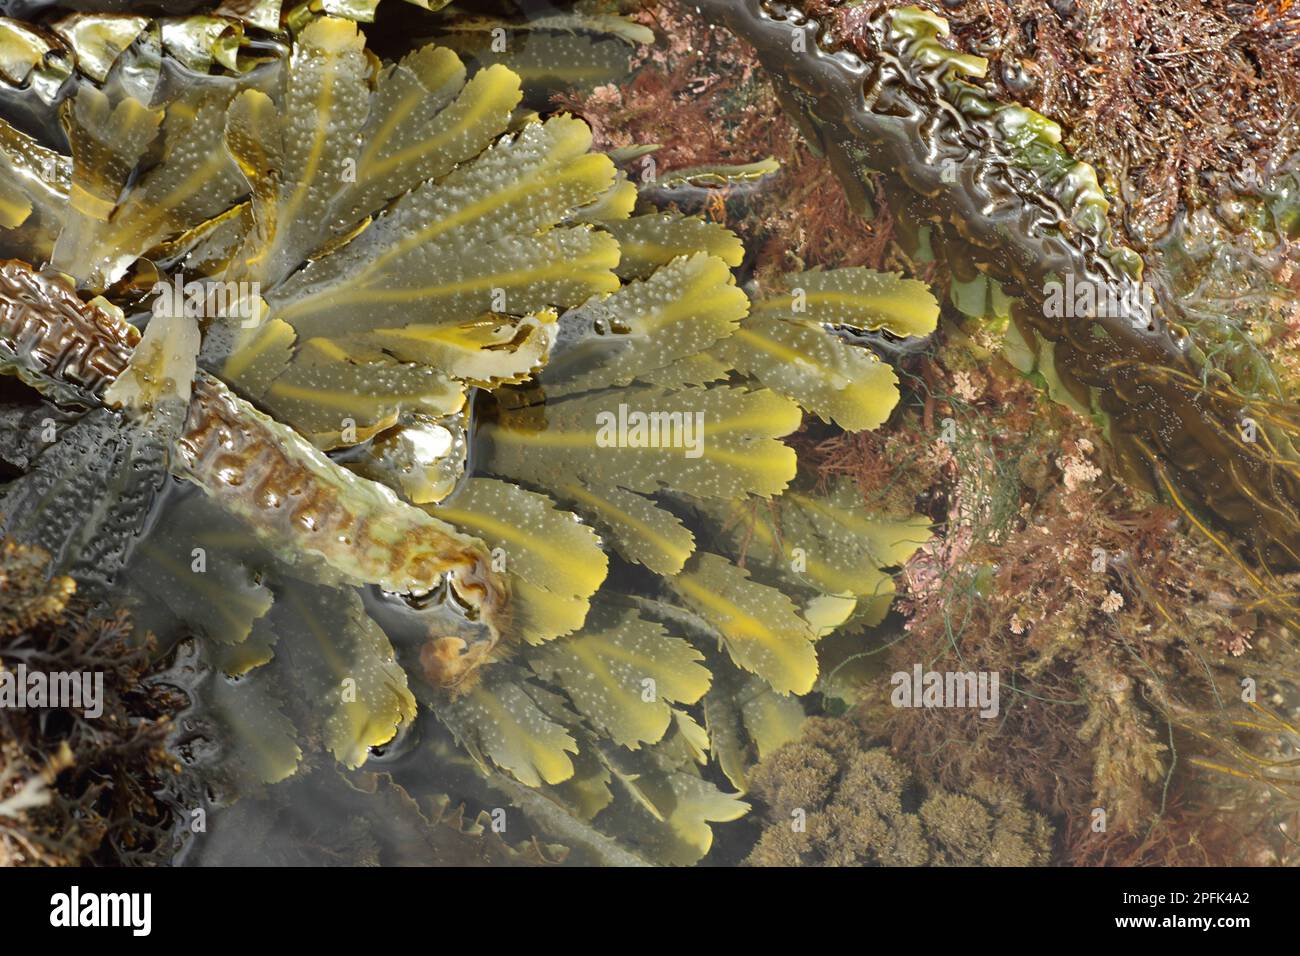 Frondes à crémaillère (Fucus serratus), à rockpool à marée basse, Kimmeridge, île de Purbeck, Dorset, Angleterre, Royaume-Uni Banque D'Images